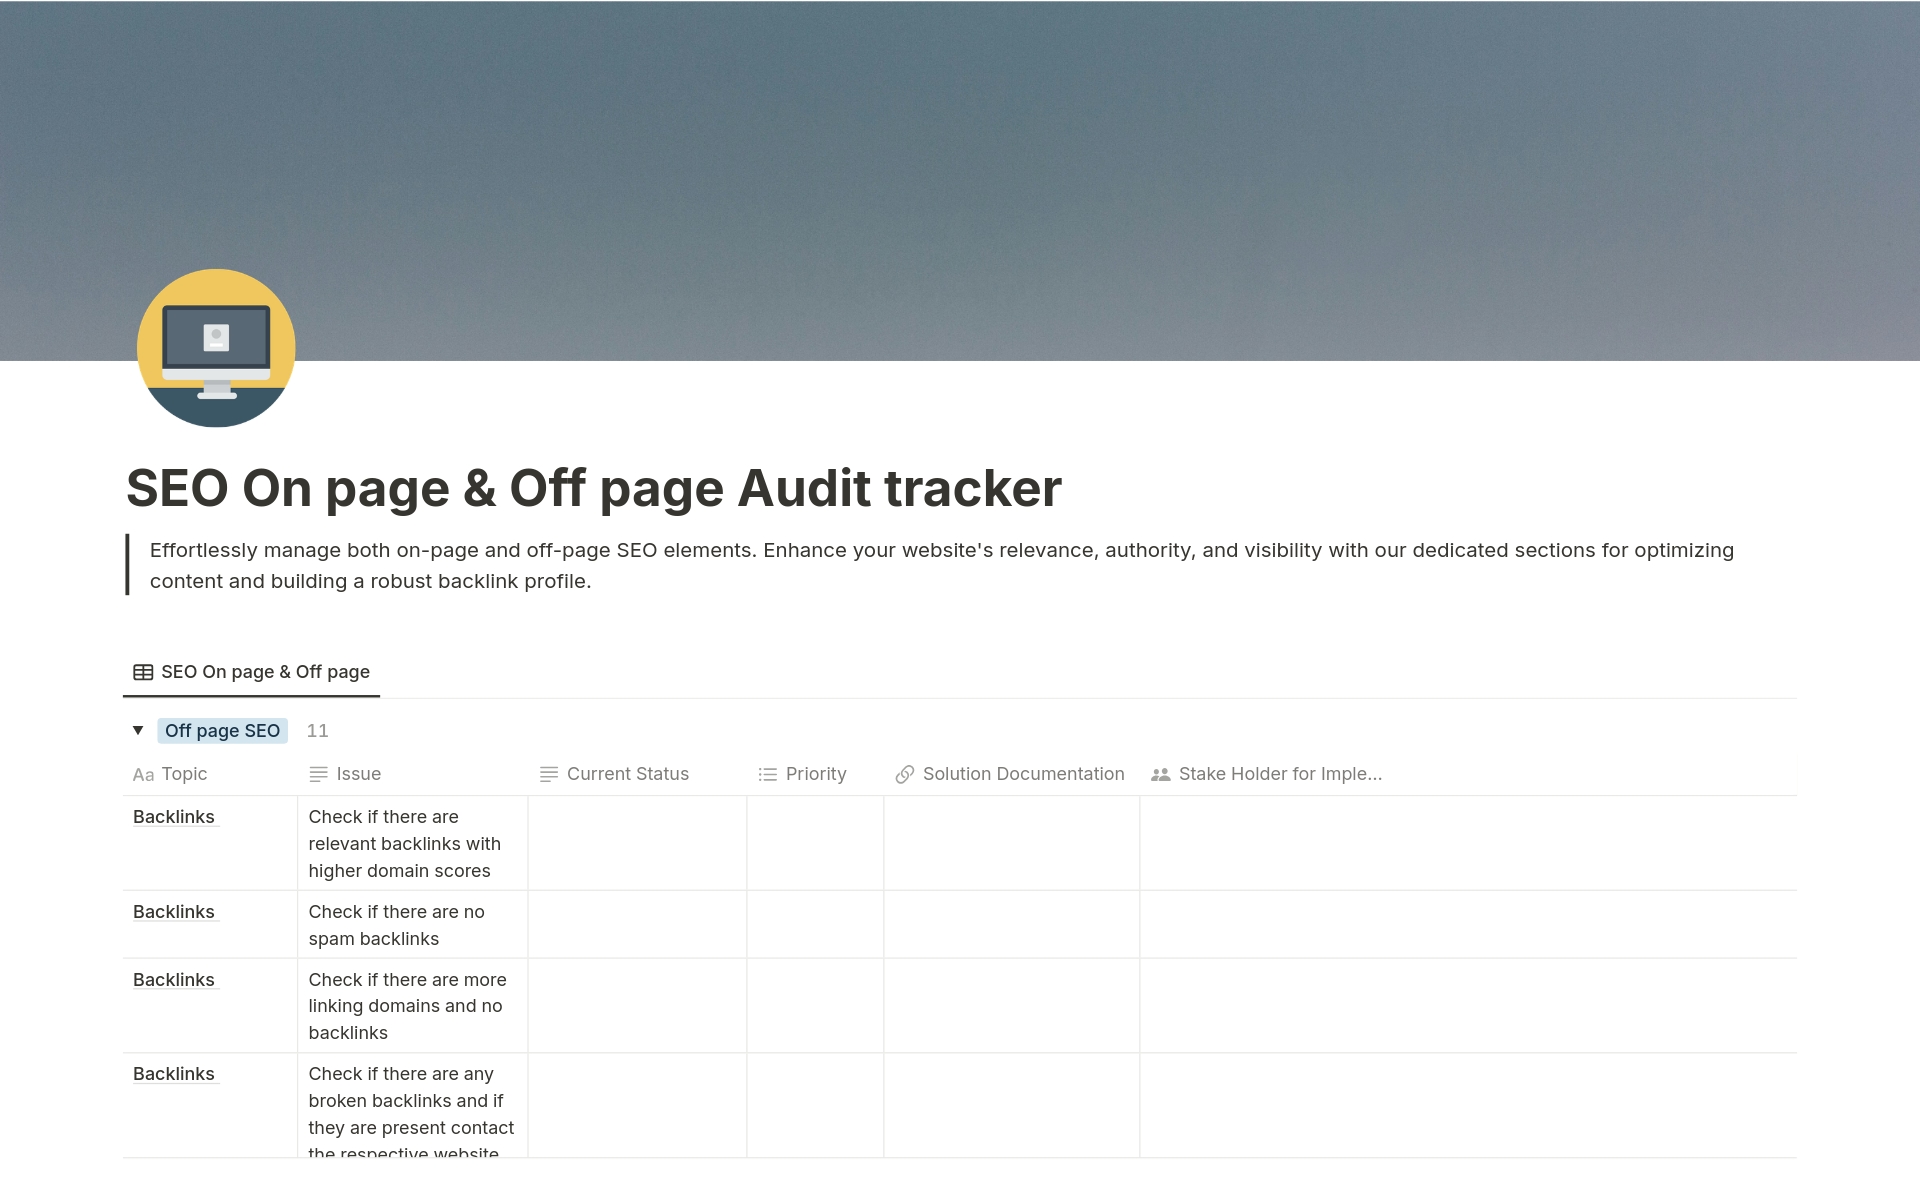 Vista previa de una plantilla para SEO On page & Off page Audit tracker 